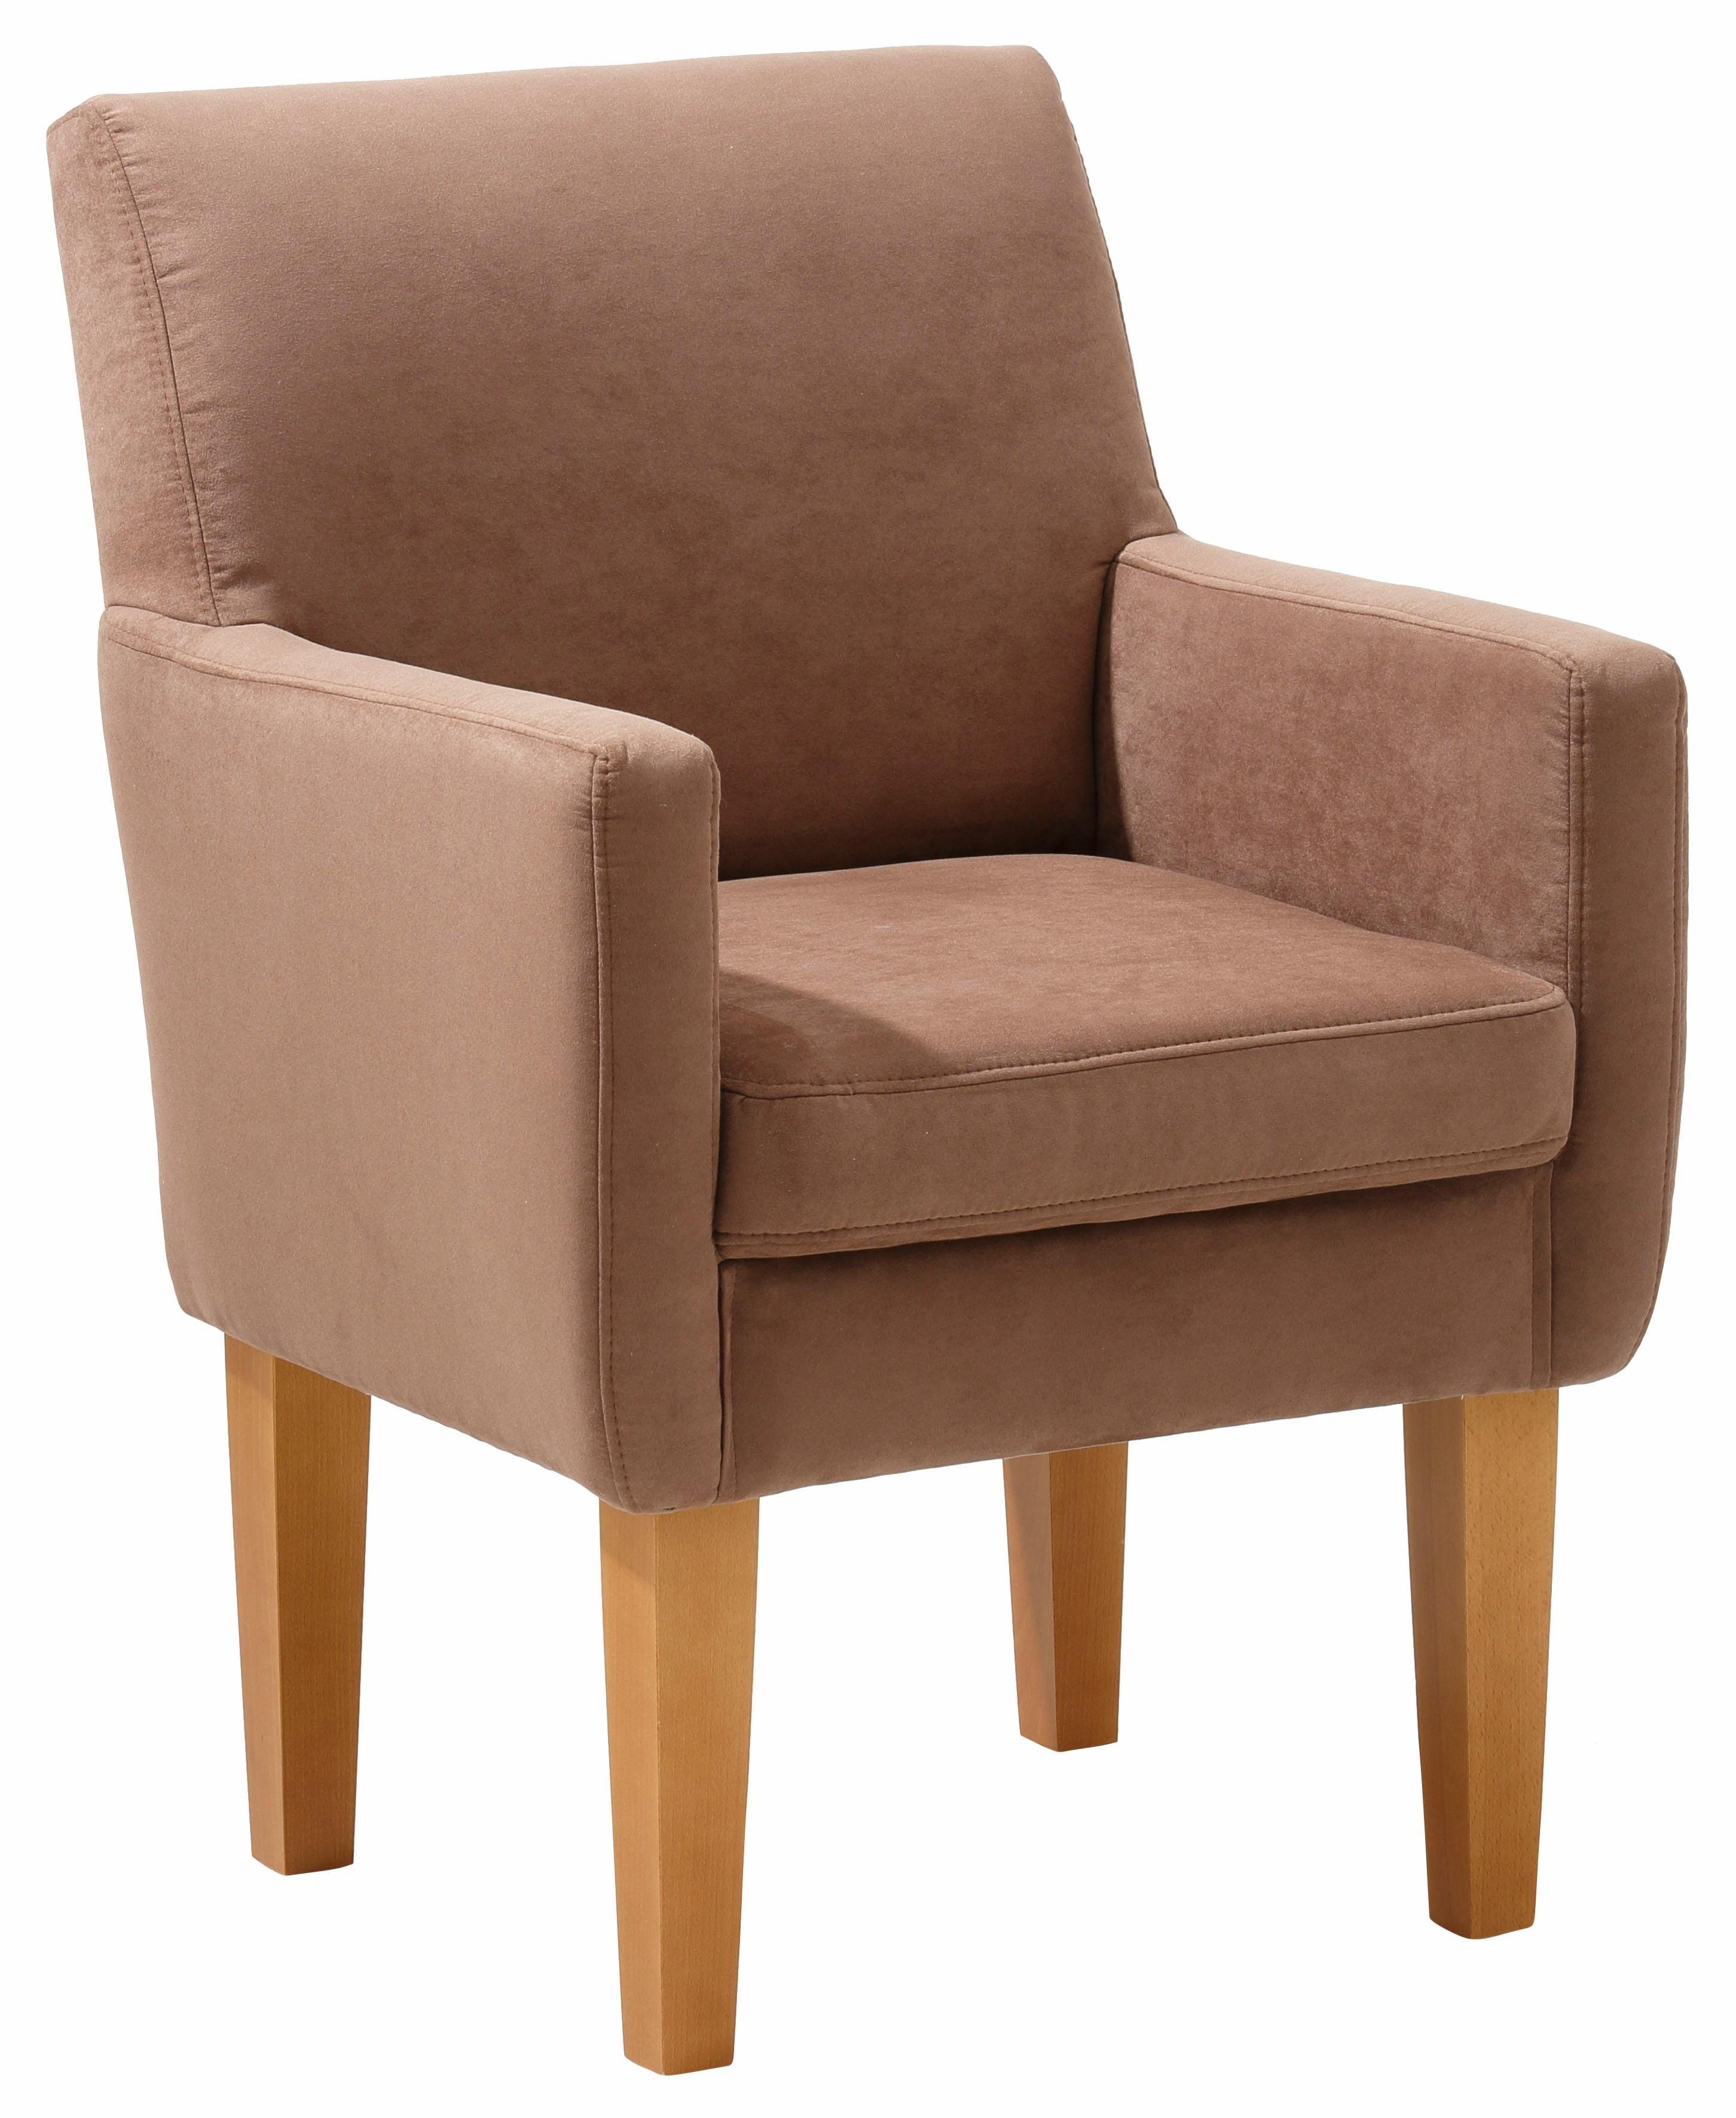 Home affaire Sessel »Fehmarn«, komfortable Sitzhöhe von 54 cm, in 3  verschiedenen Bezugsqualitäten online kaufen | OTTO